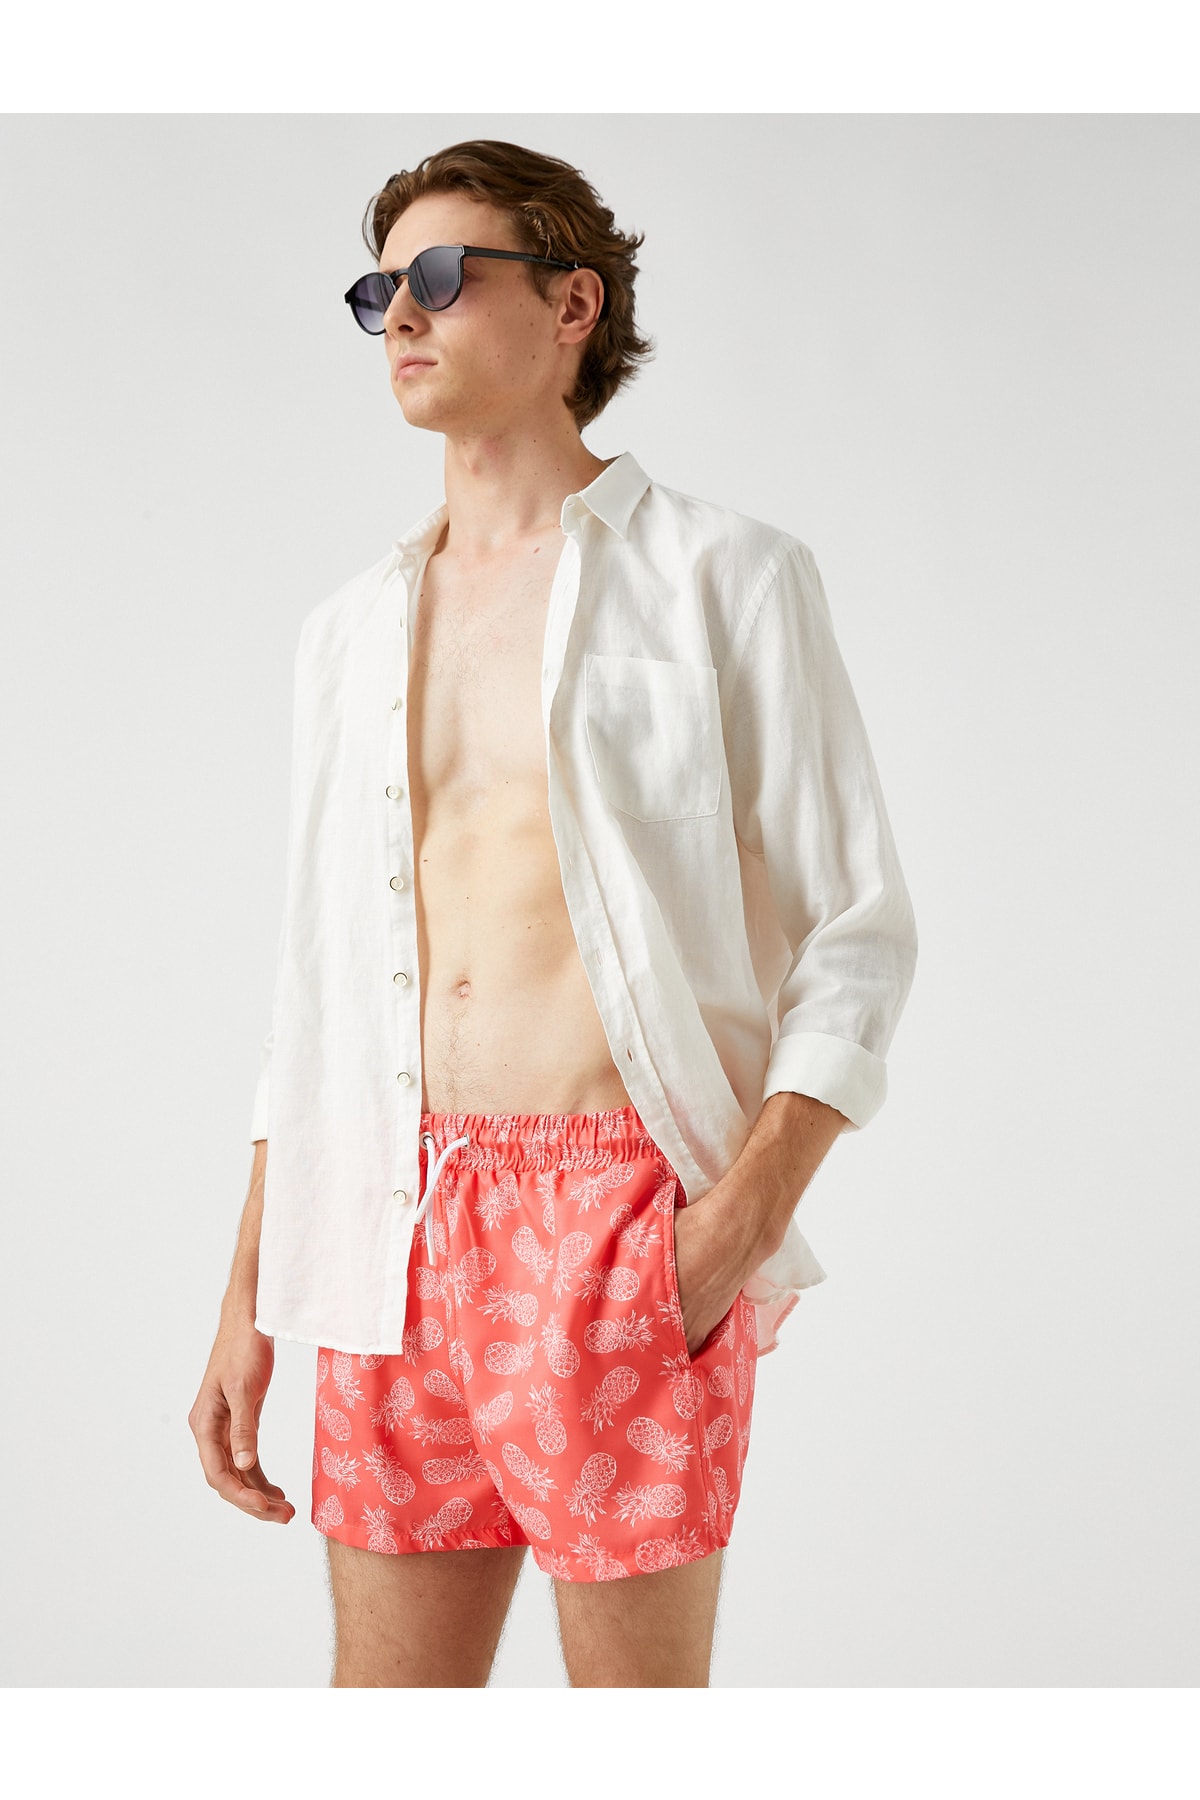 Levně Koton Swimsuit Shorts Pineapple Printed, Pockets, Tie Waist